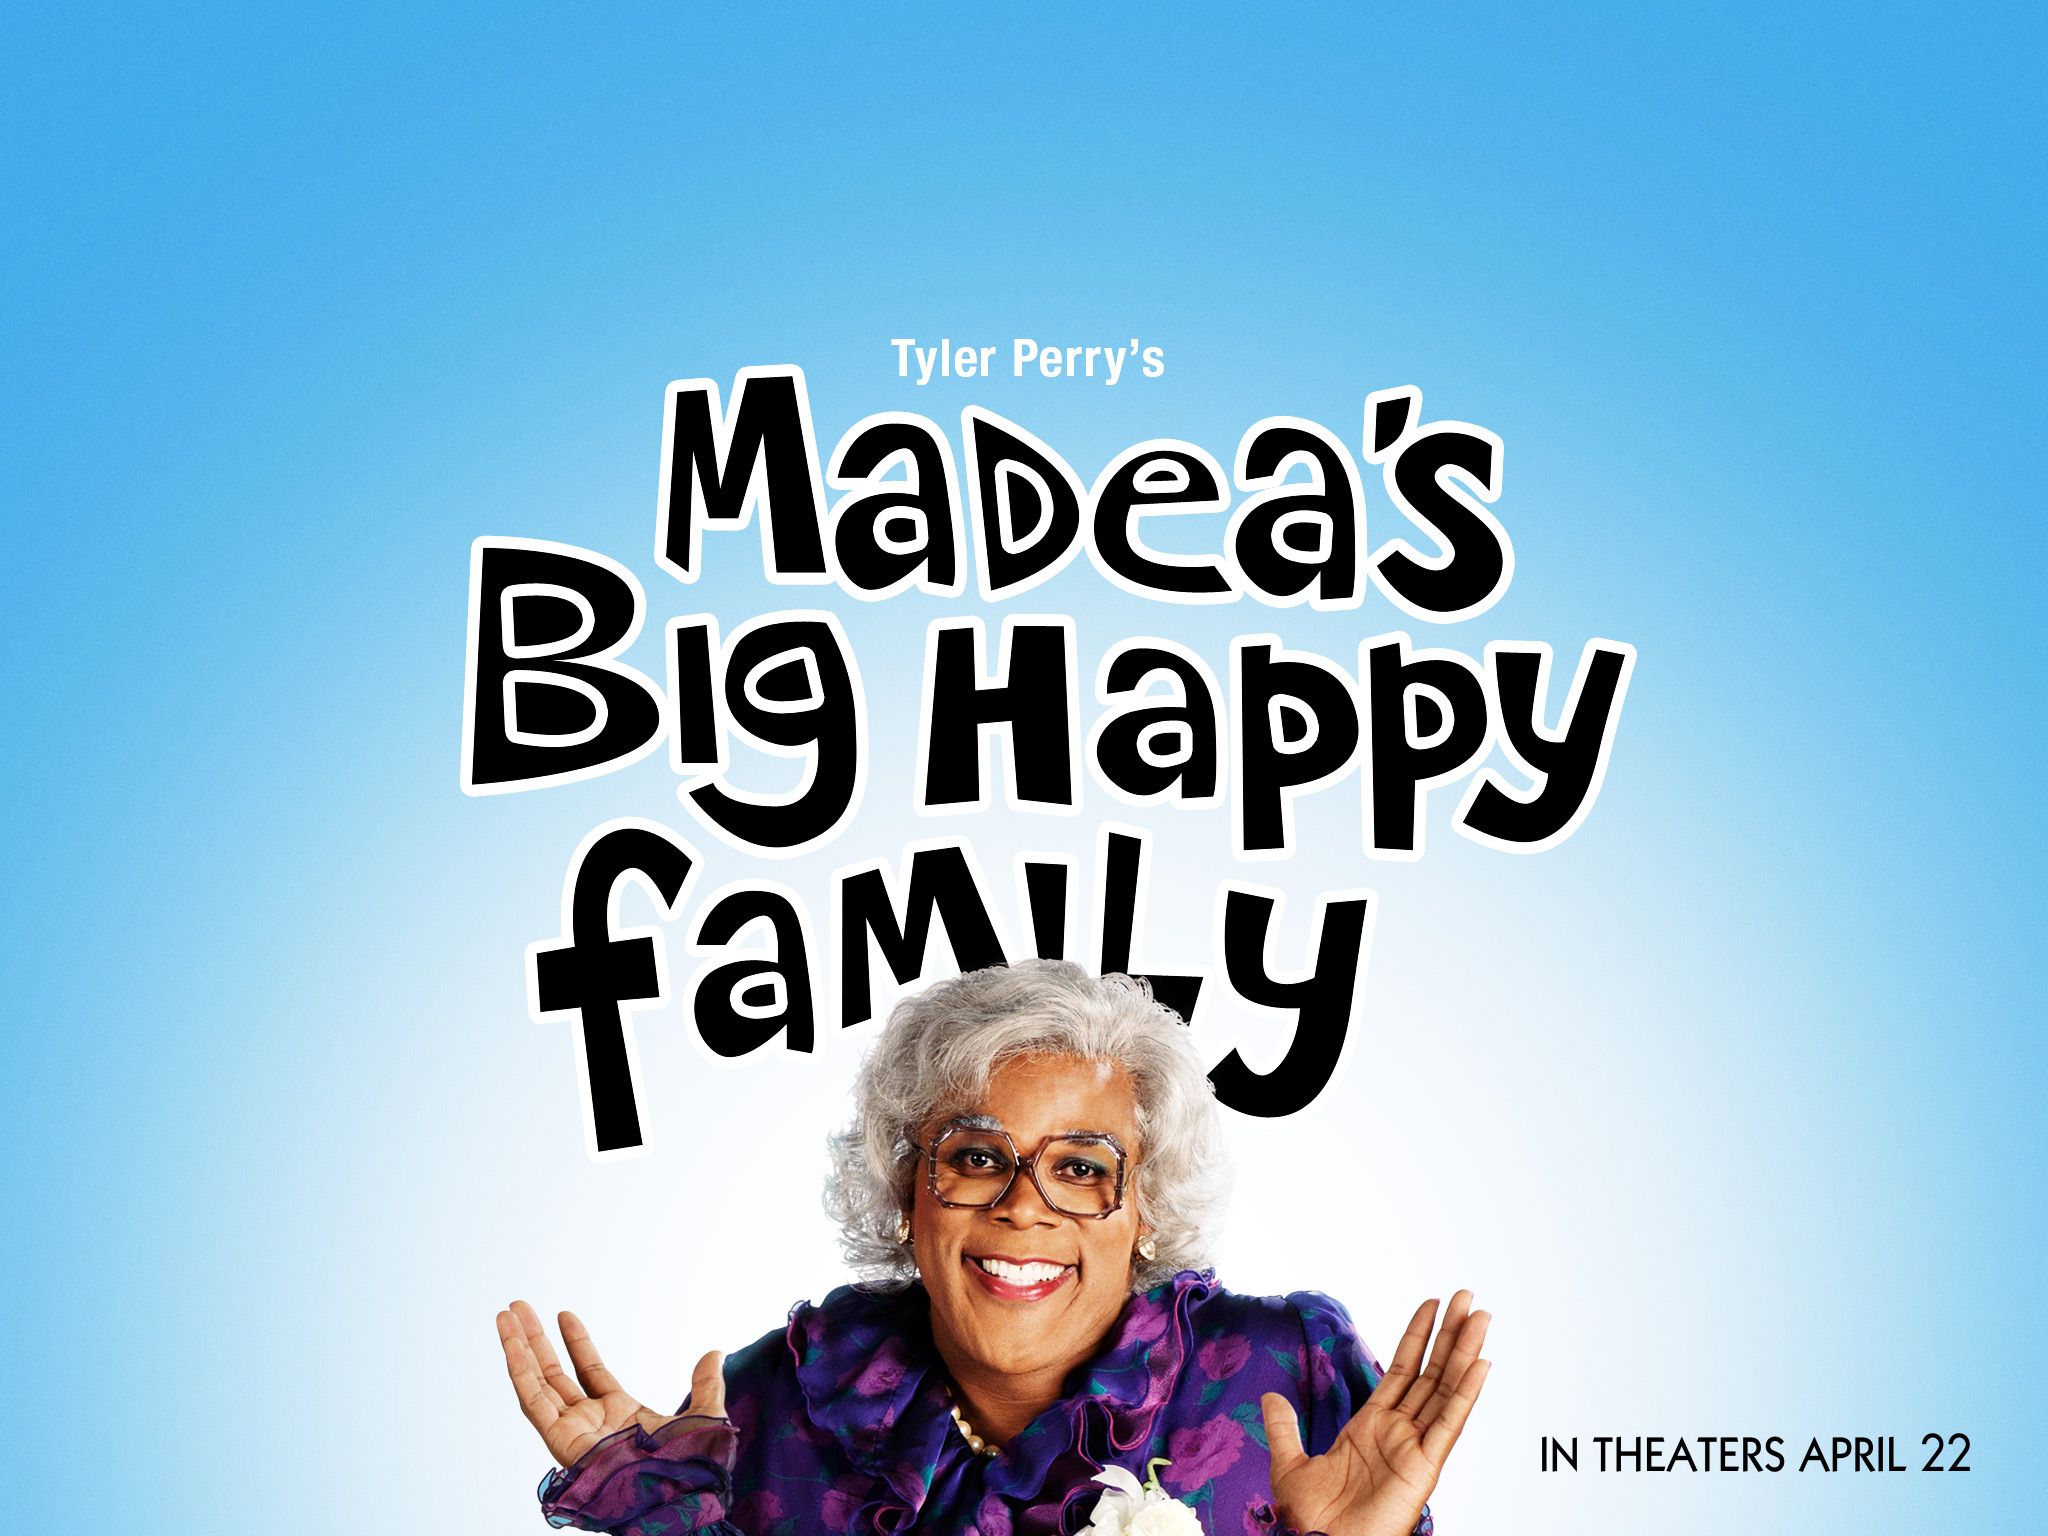 Фотографии, постеры и кадры из фильма Большая счастливая семья Мэдеи.